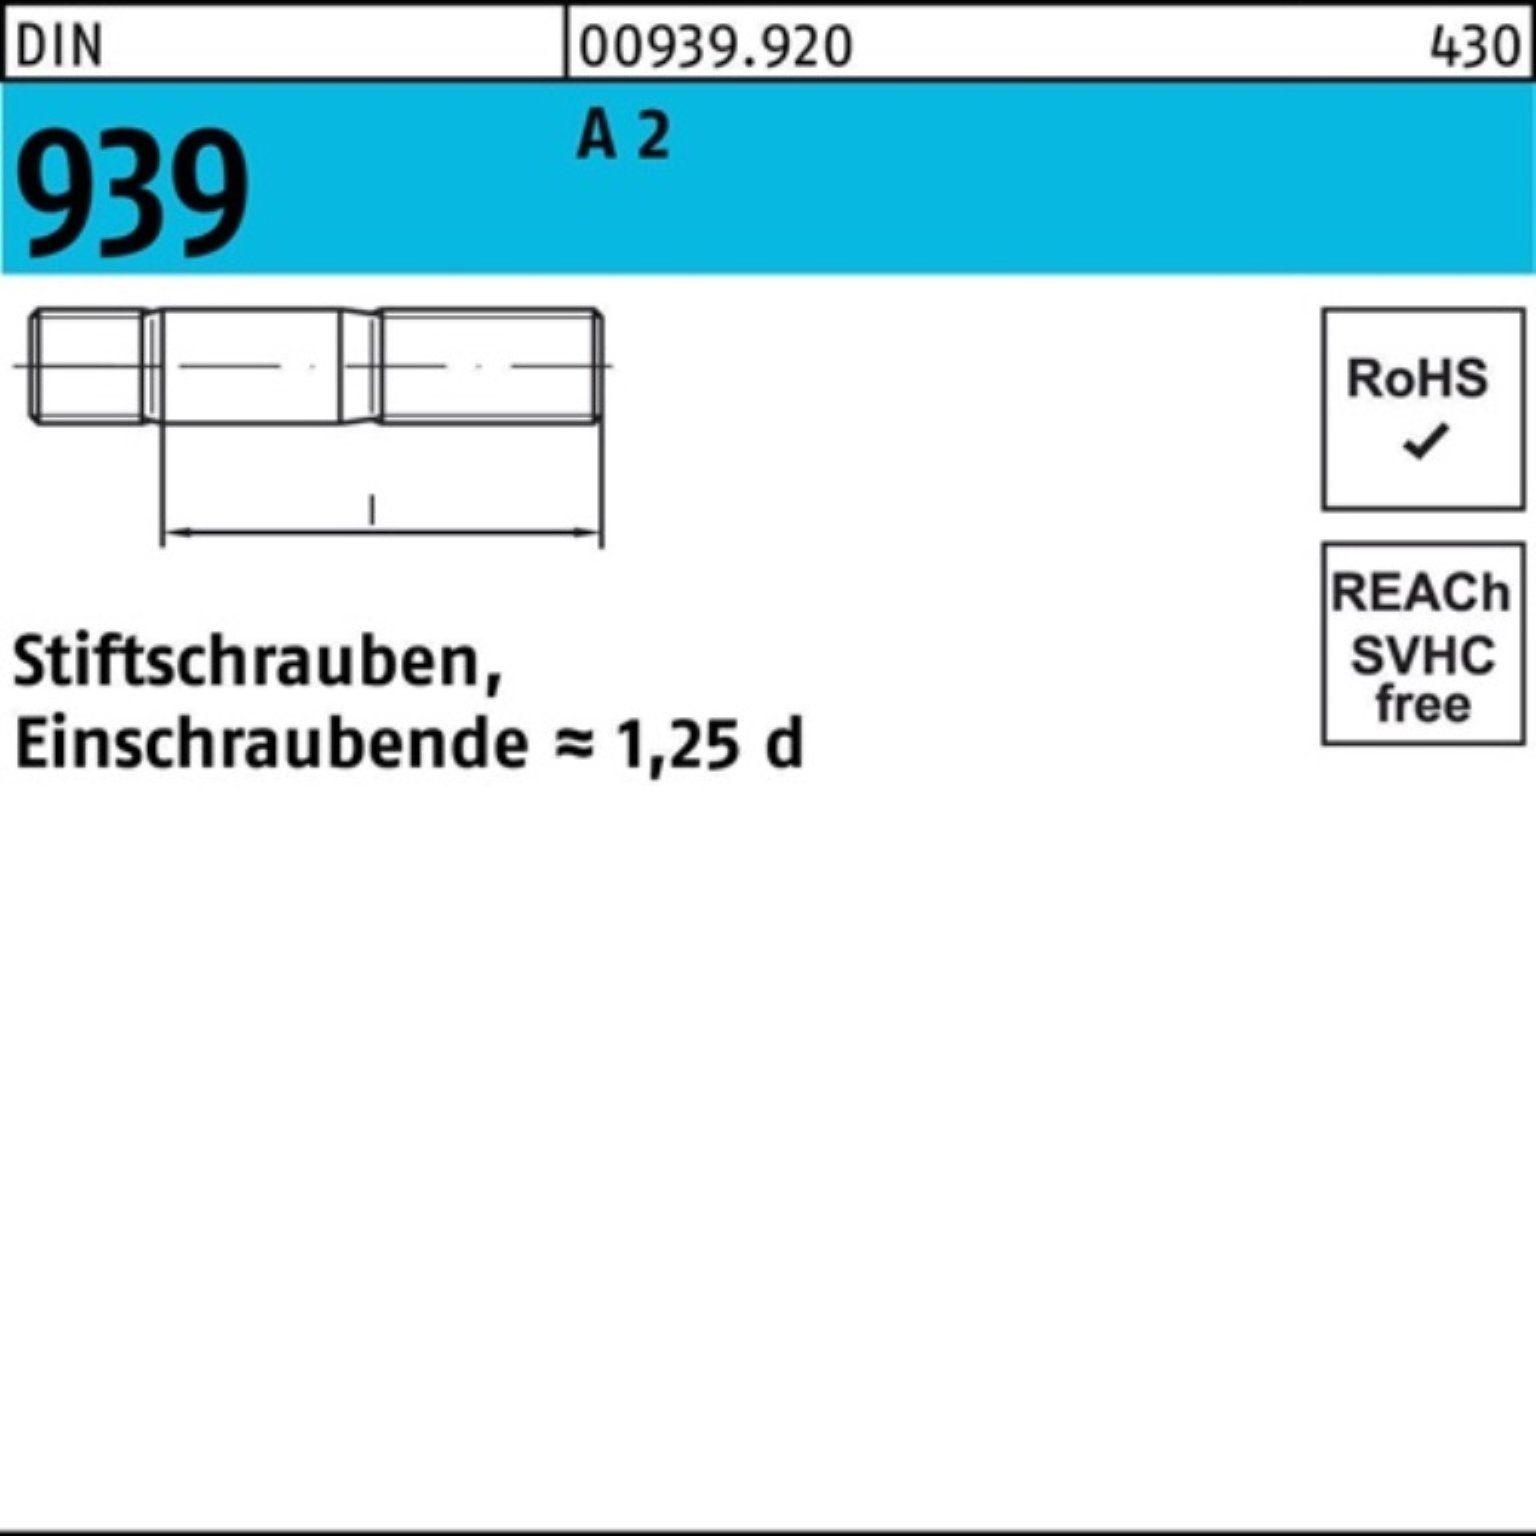 A 939 M6x Stiftschraube Pack Stiftschraube 2 35 25 100er St Einschraubende=1,25d Reyher DIN